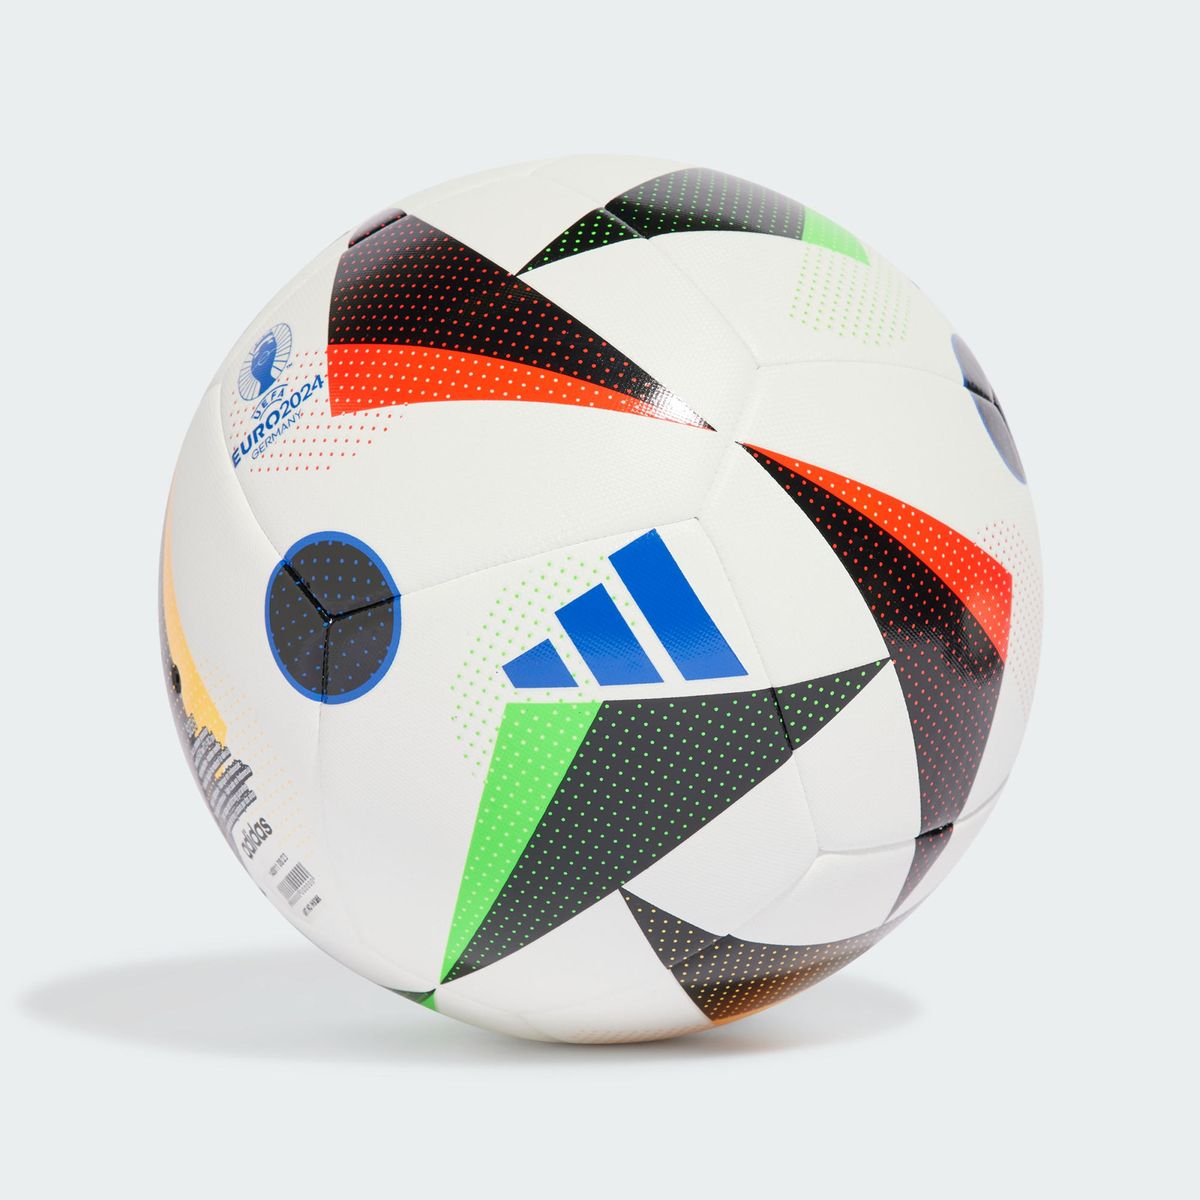 Ballon d'entraînement euro 24 white / black / glow blue Adidas Performance